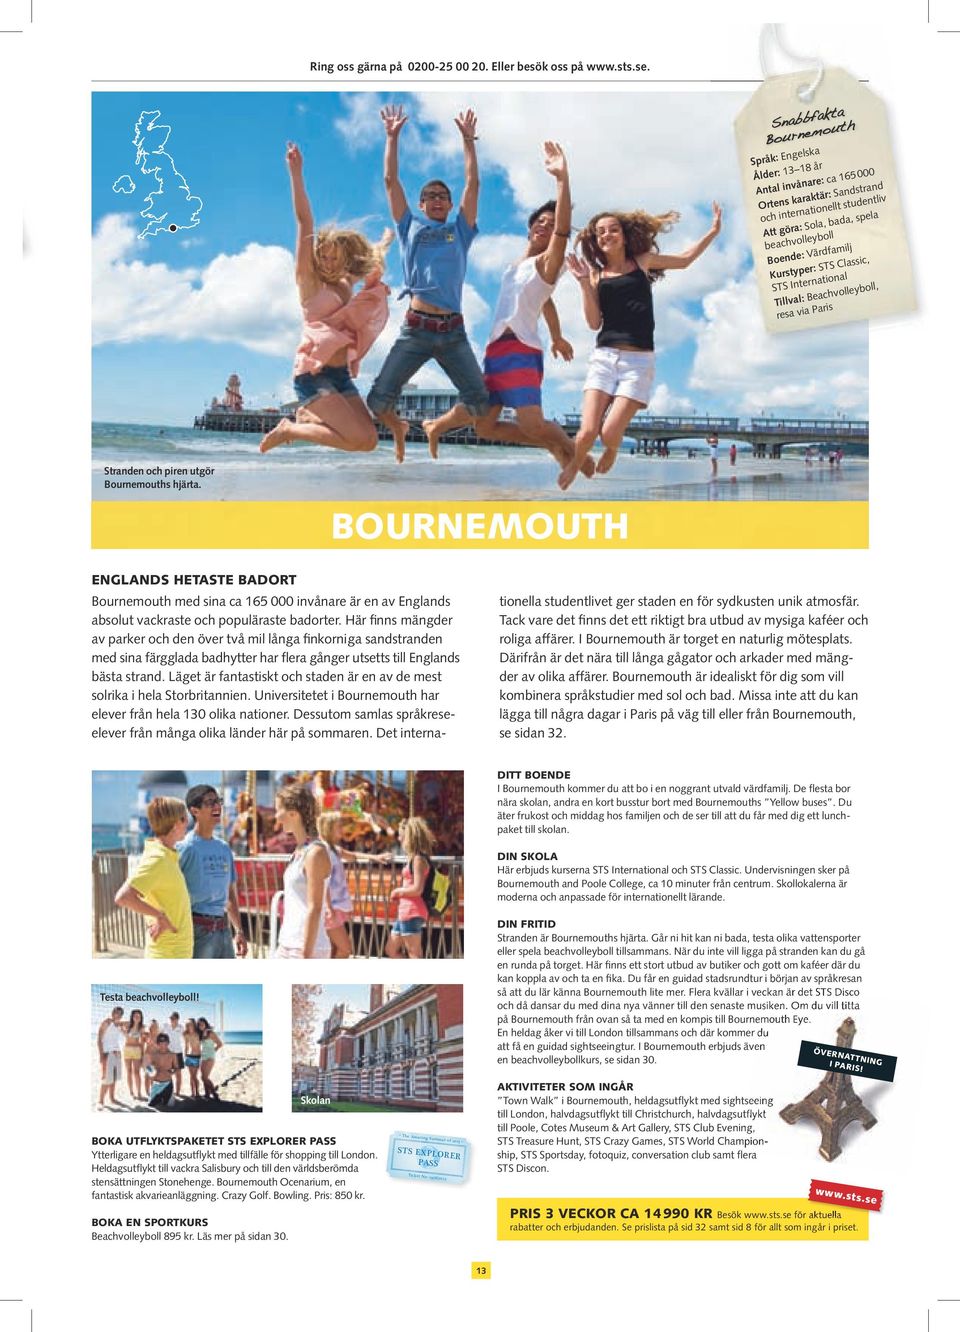 International Tillval: Beachvolleyboll, resa via Paris Stranden och piren utgör Bournemouths hjärta.